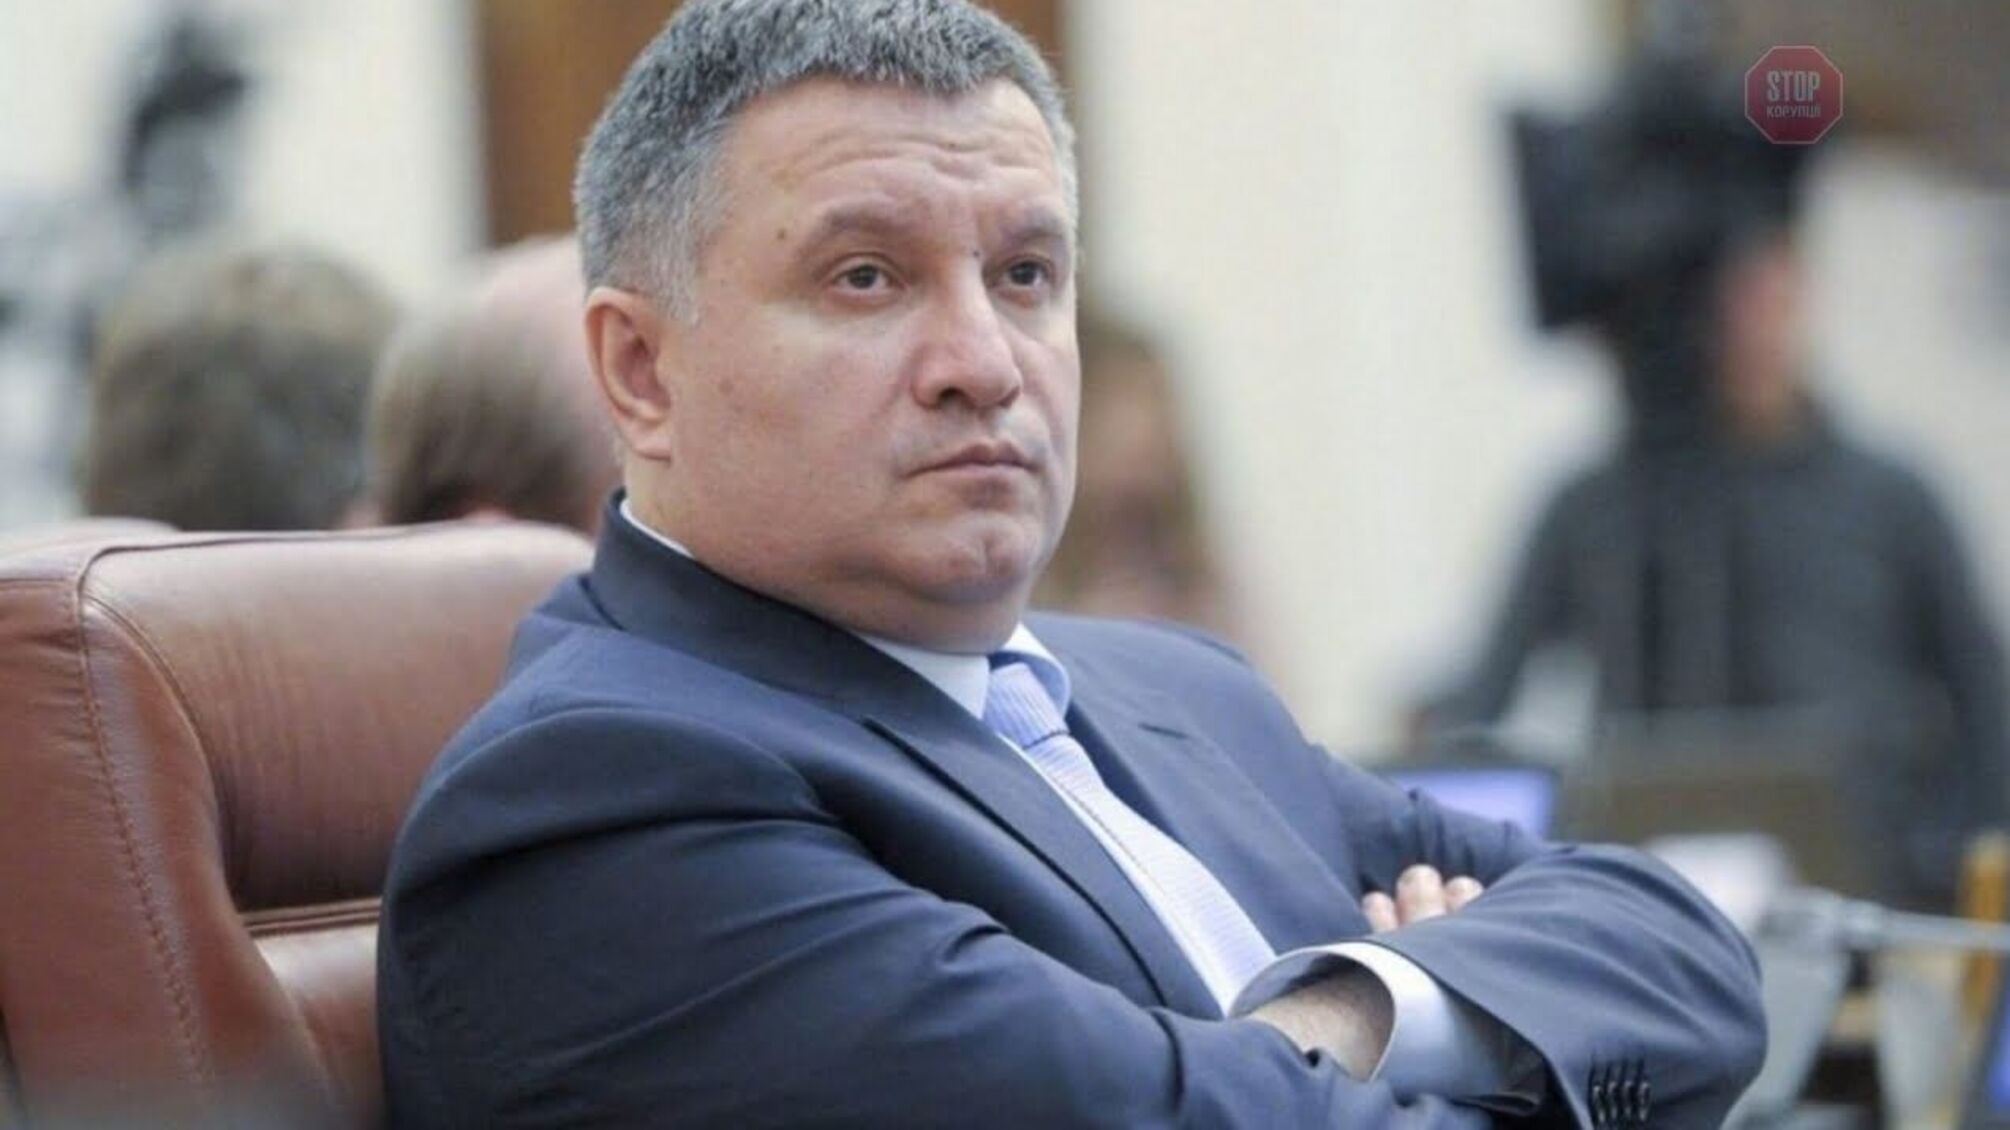 Arsen Avakov criticized the mayor of Cherkasy